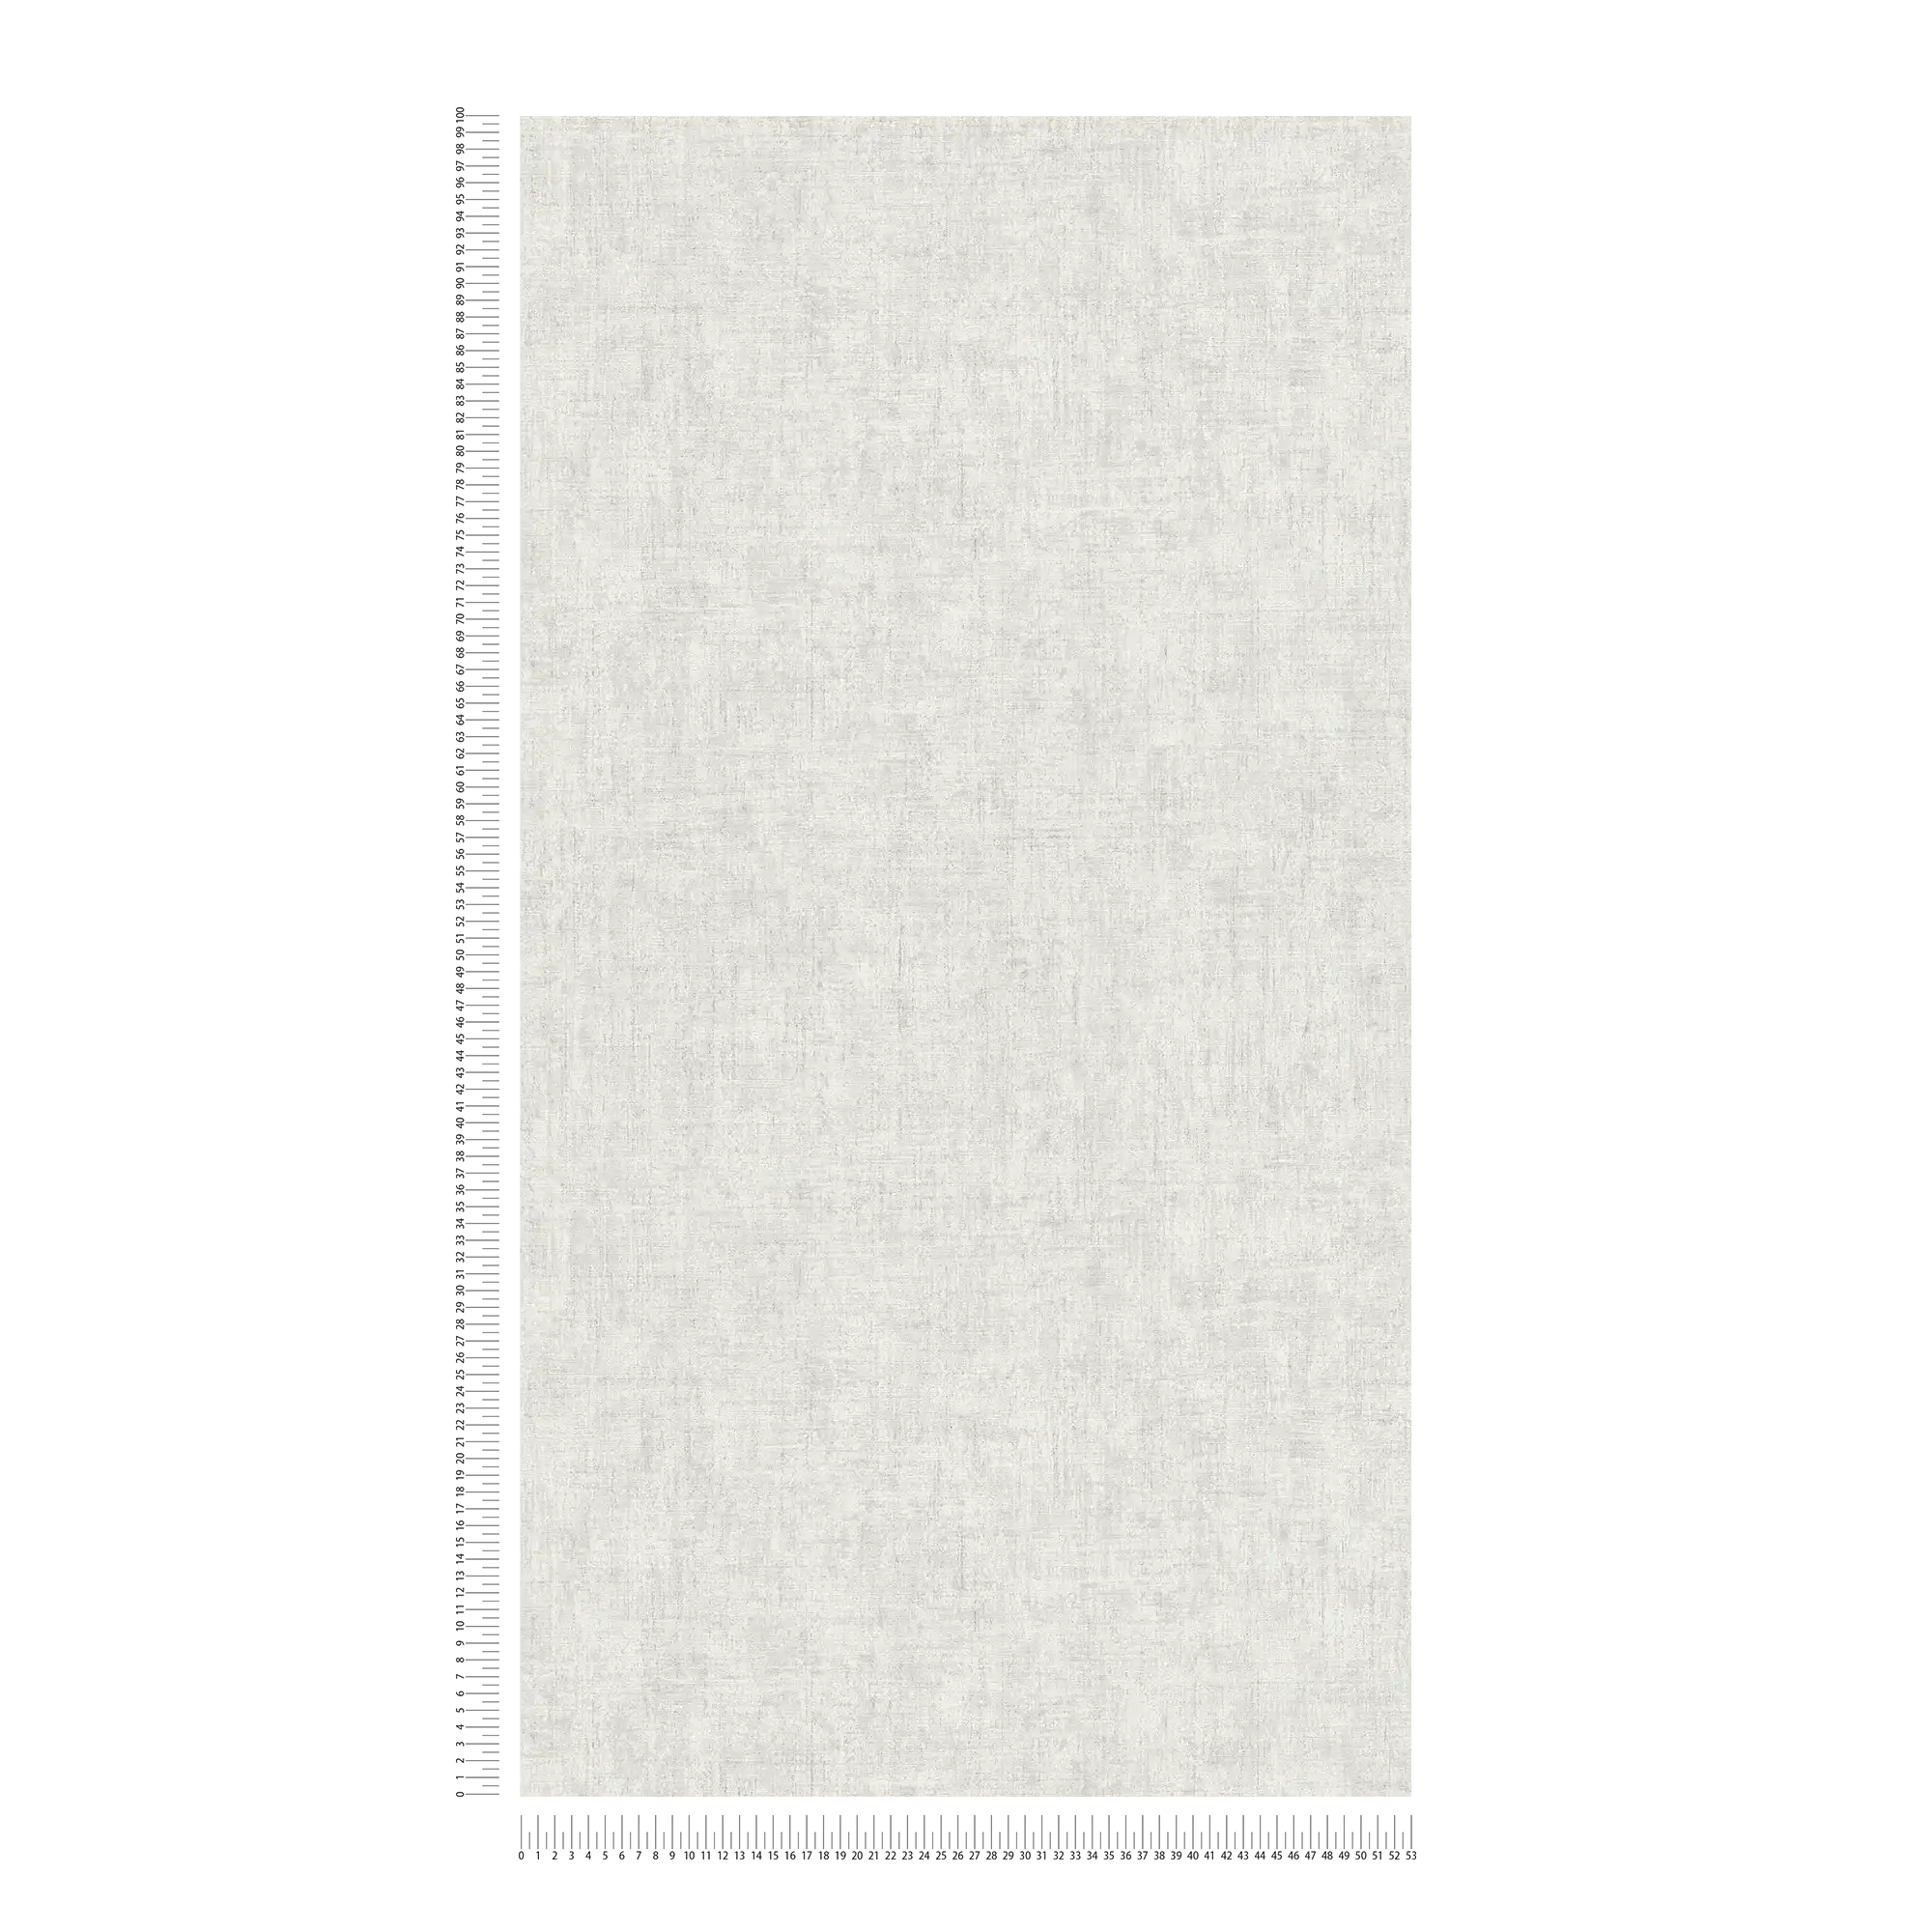             Papier peint uni gris clair avec aspect crépi rustique dans un design vintage
        